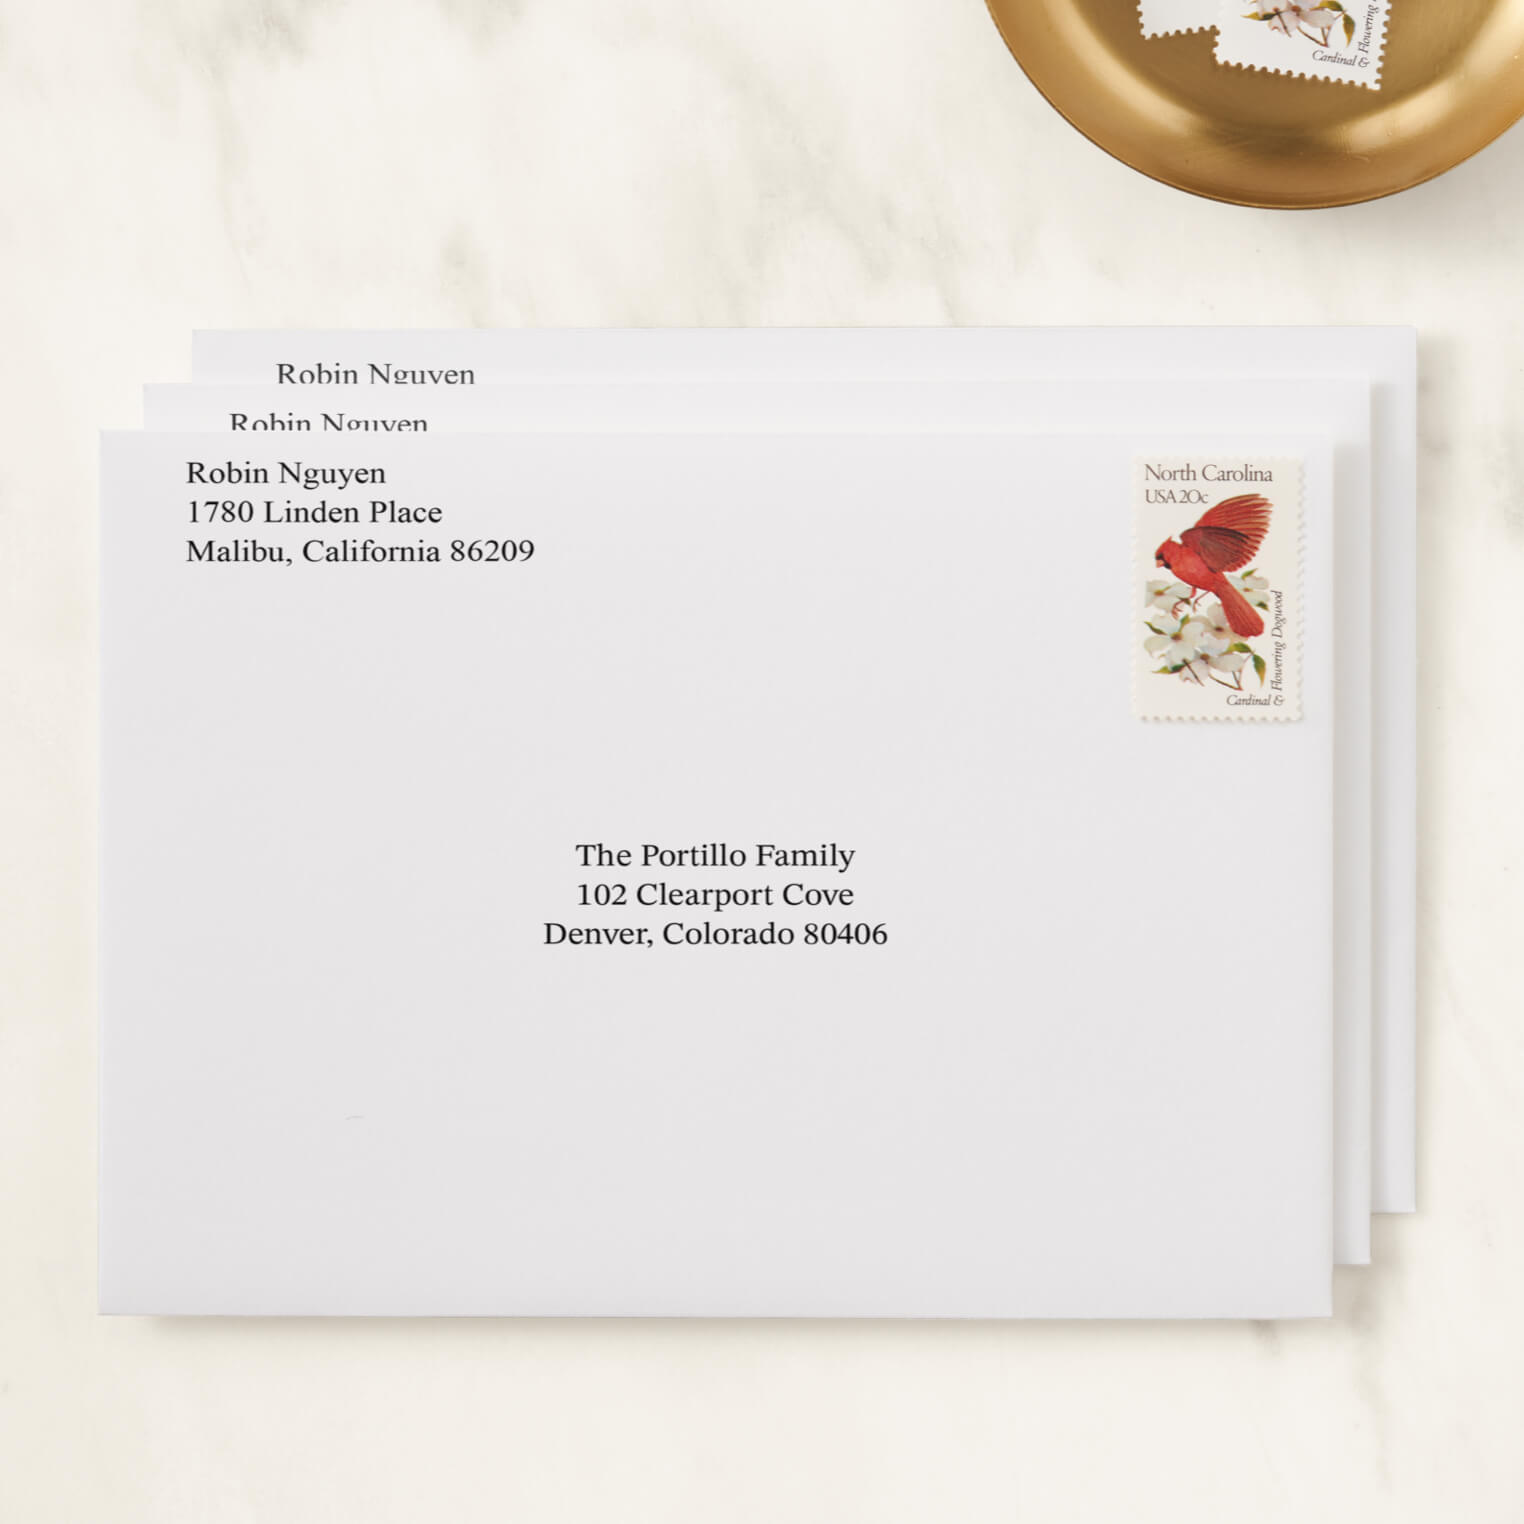 Red Envelope, Send online instantly